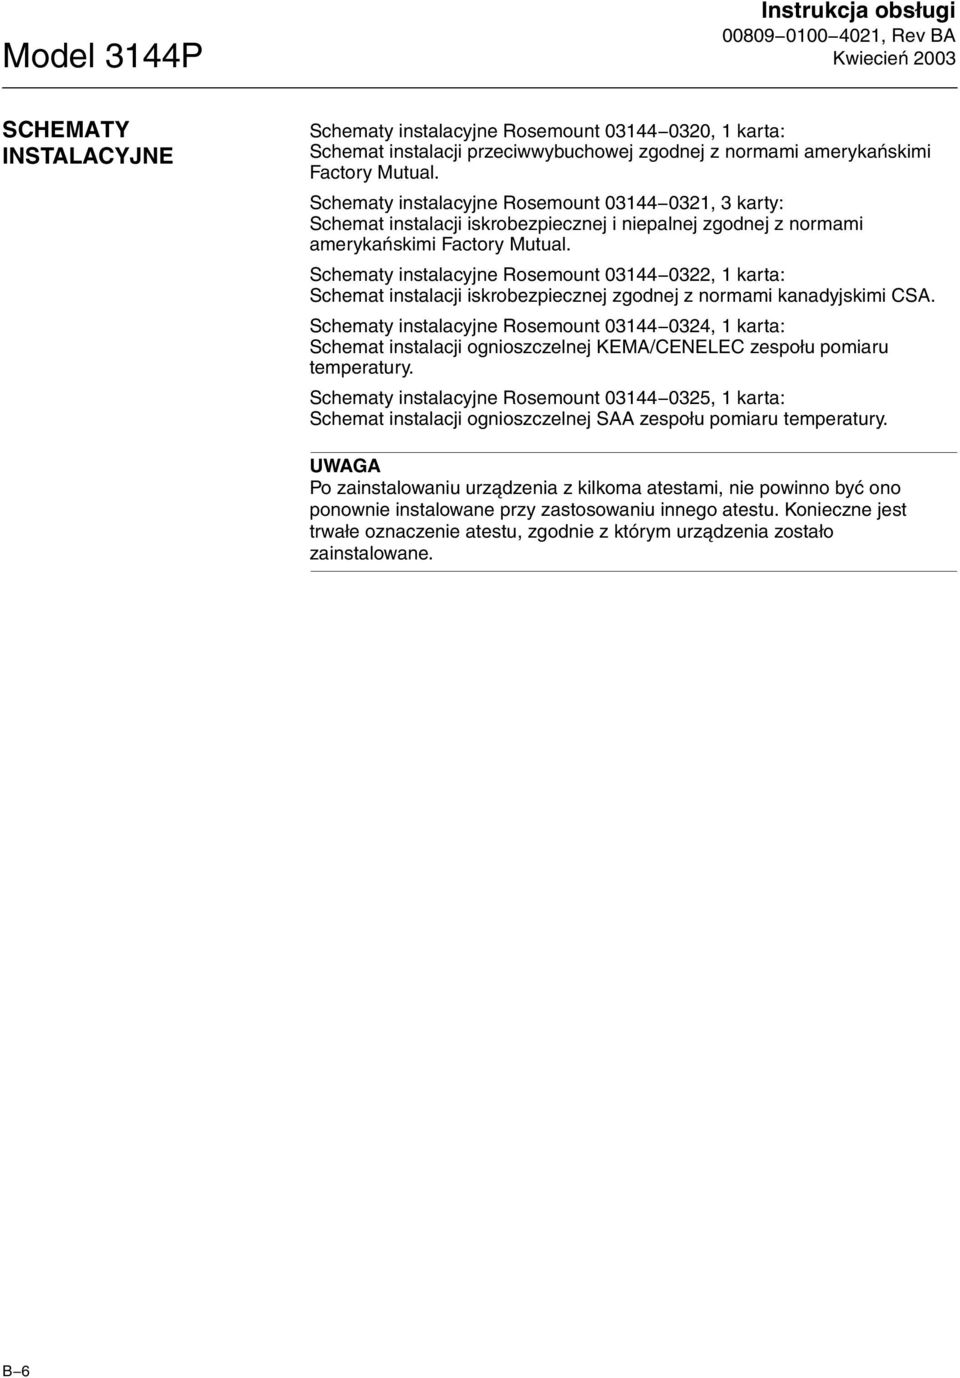 Schematy instalacyjne Rosemount 03144 0322, 1 karta: Schemat instalacji iskrobezpiecznej zgodnej z normami kanadyjskimi CSA.